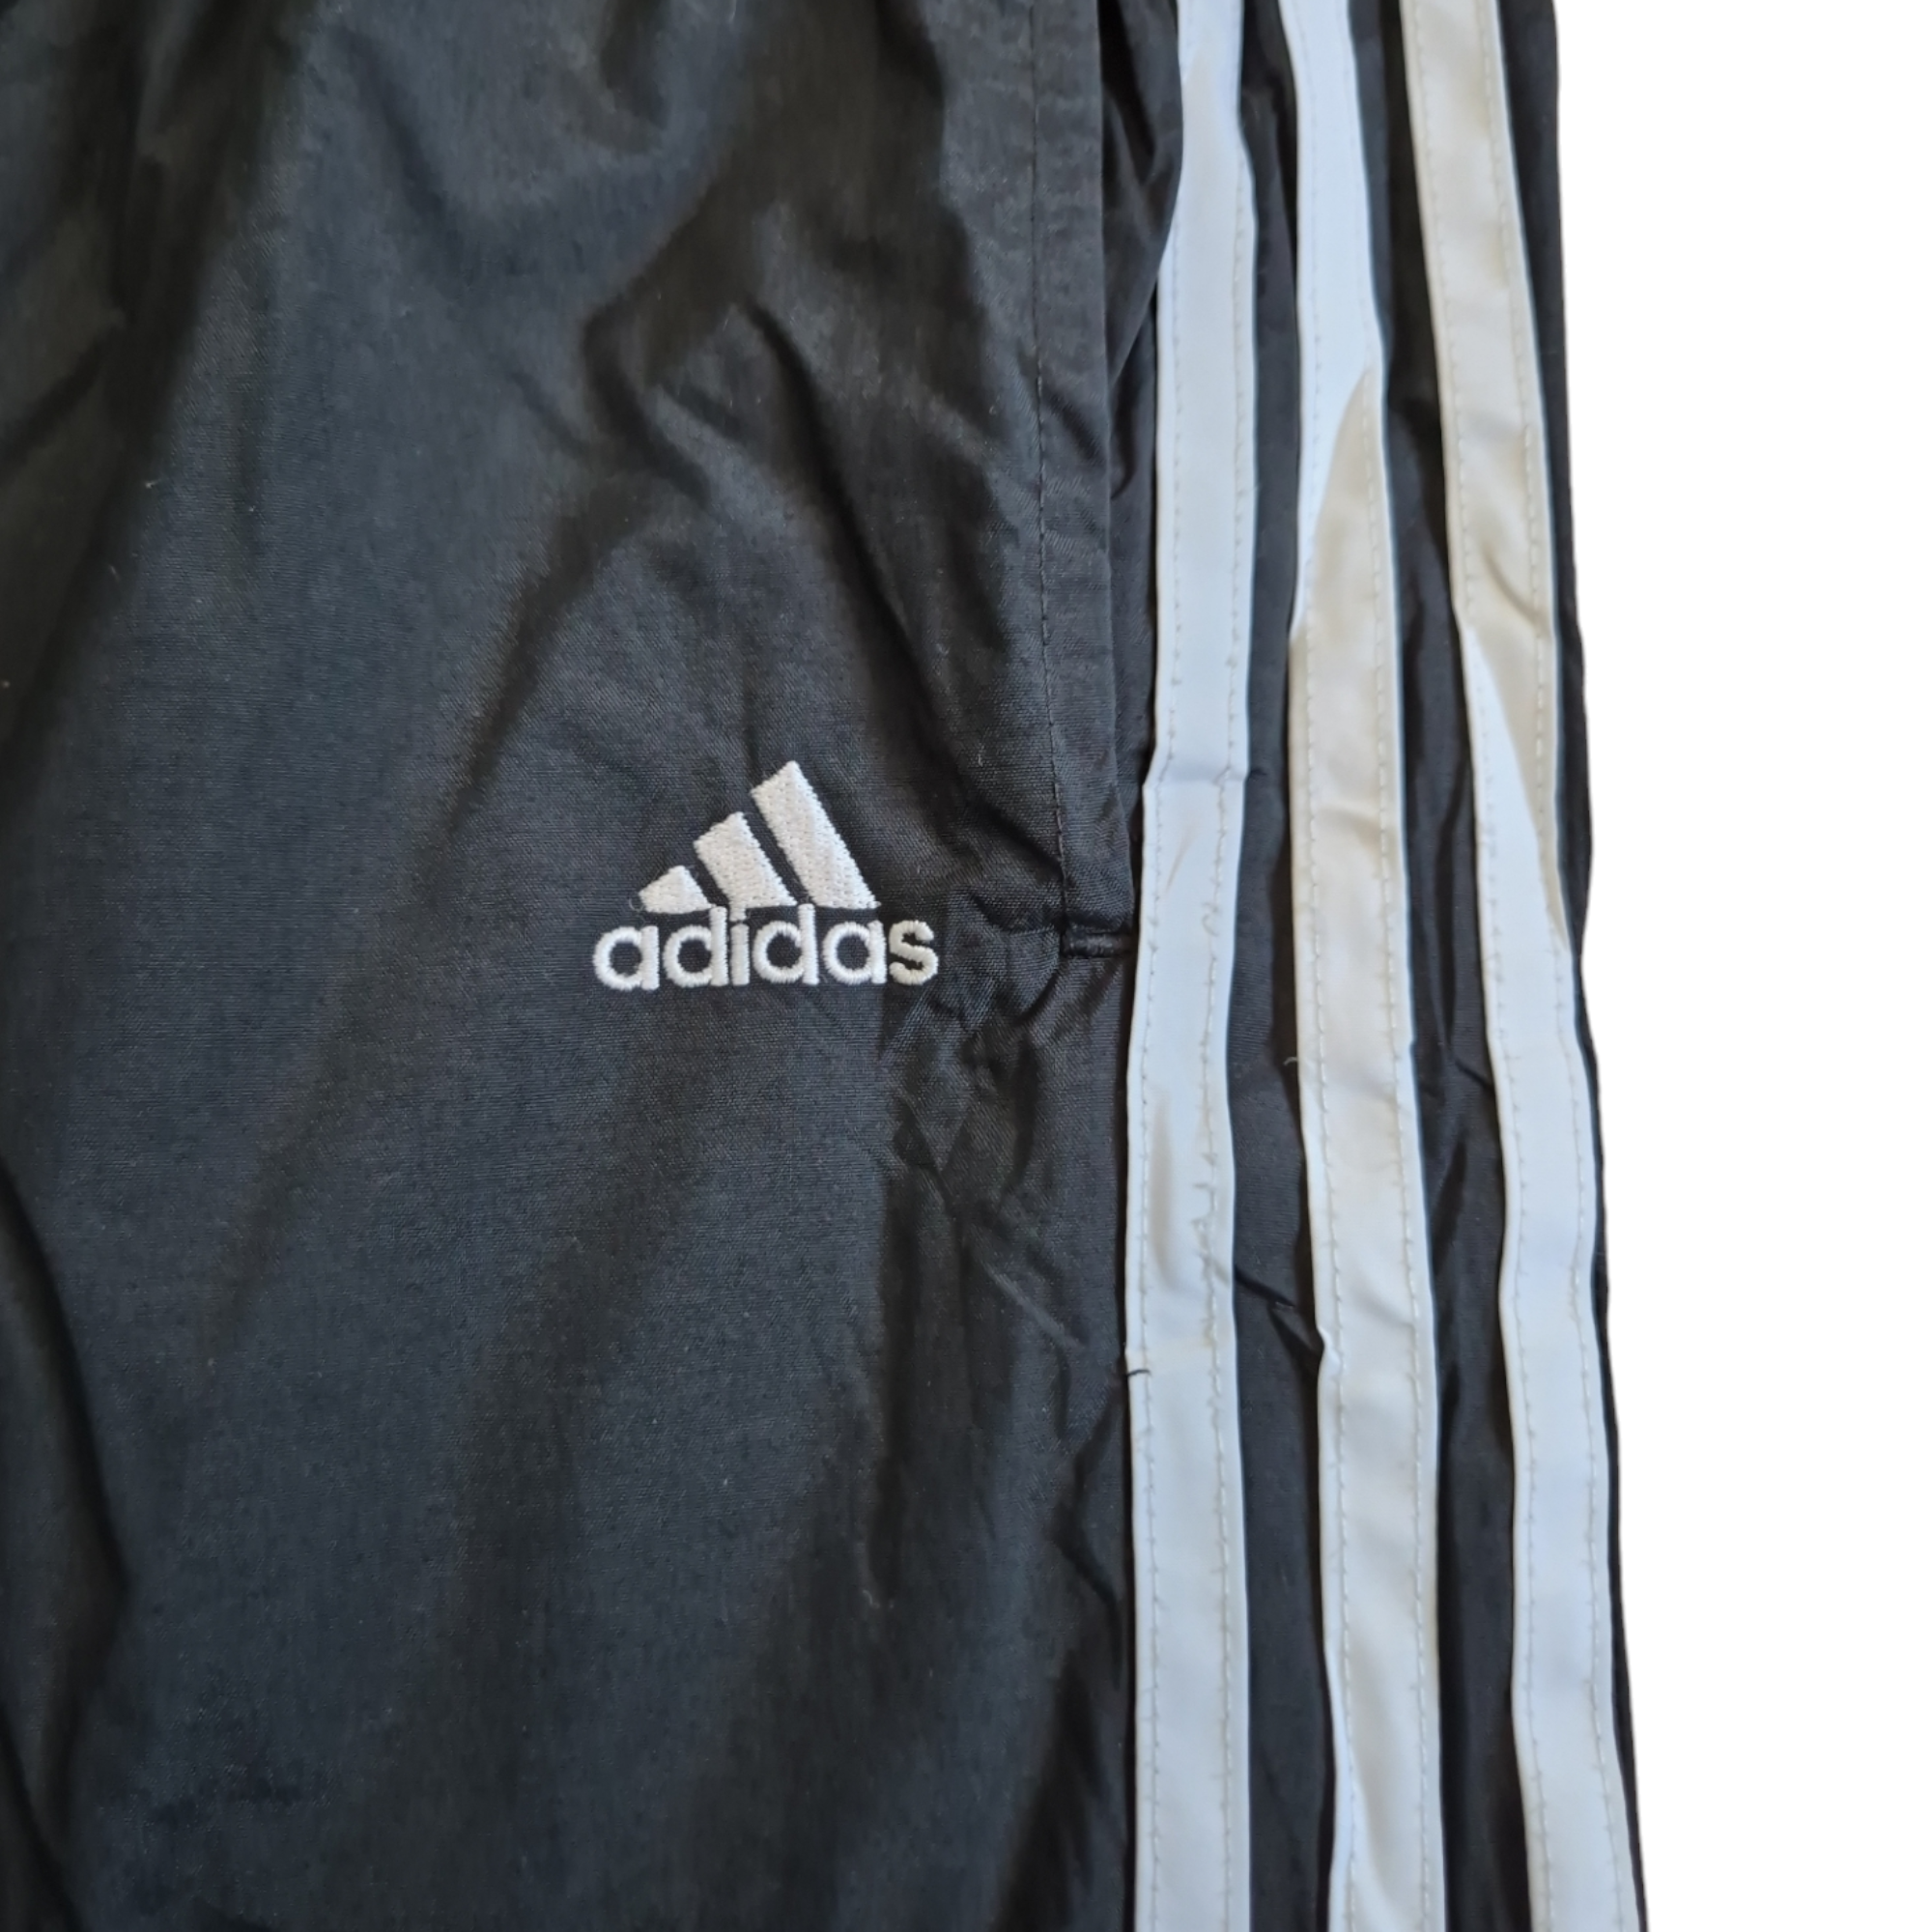 [L] Vintage Adidas Trackpants